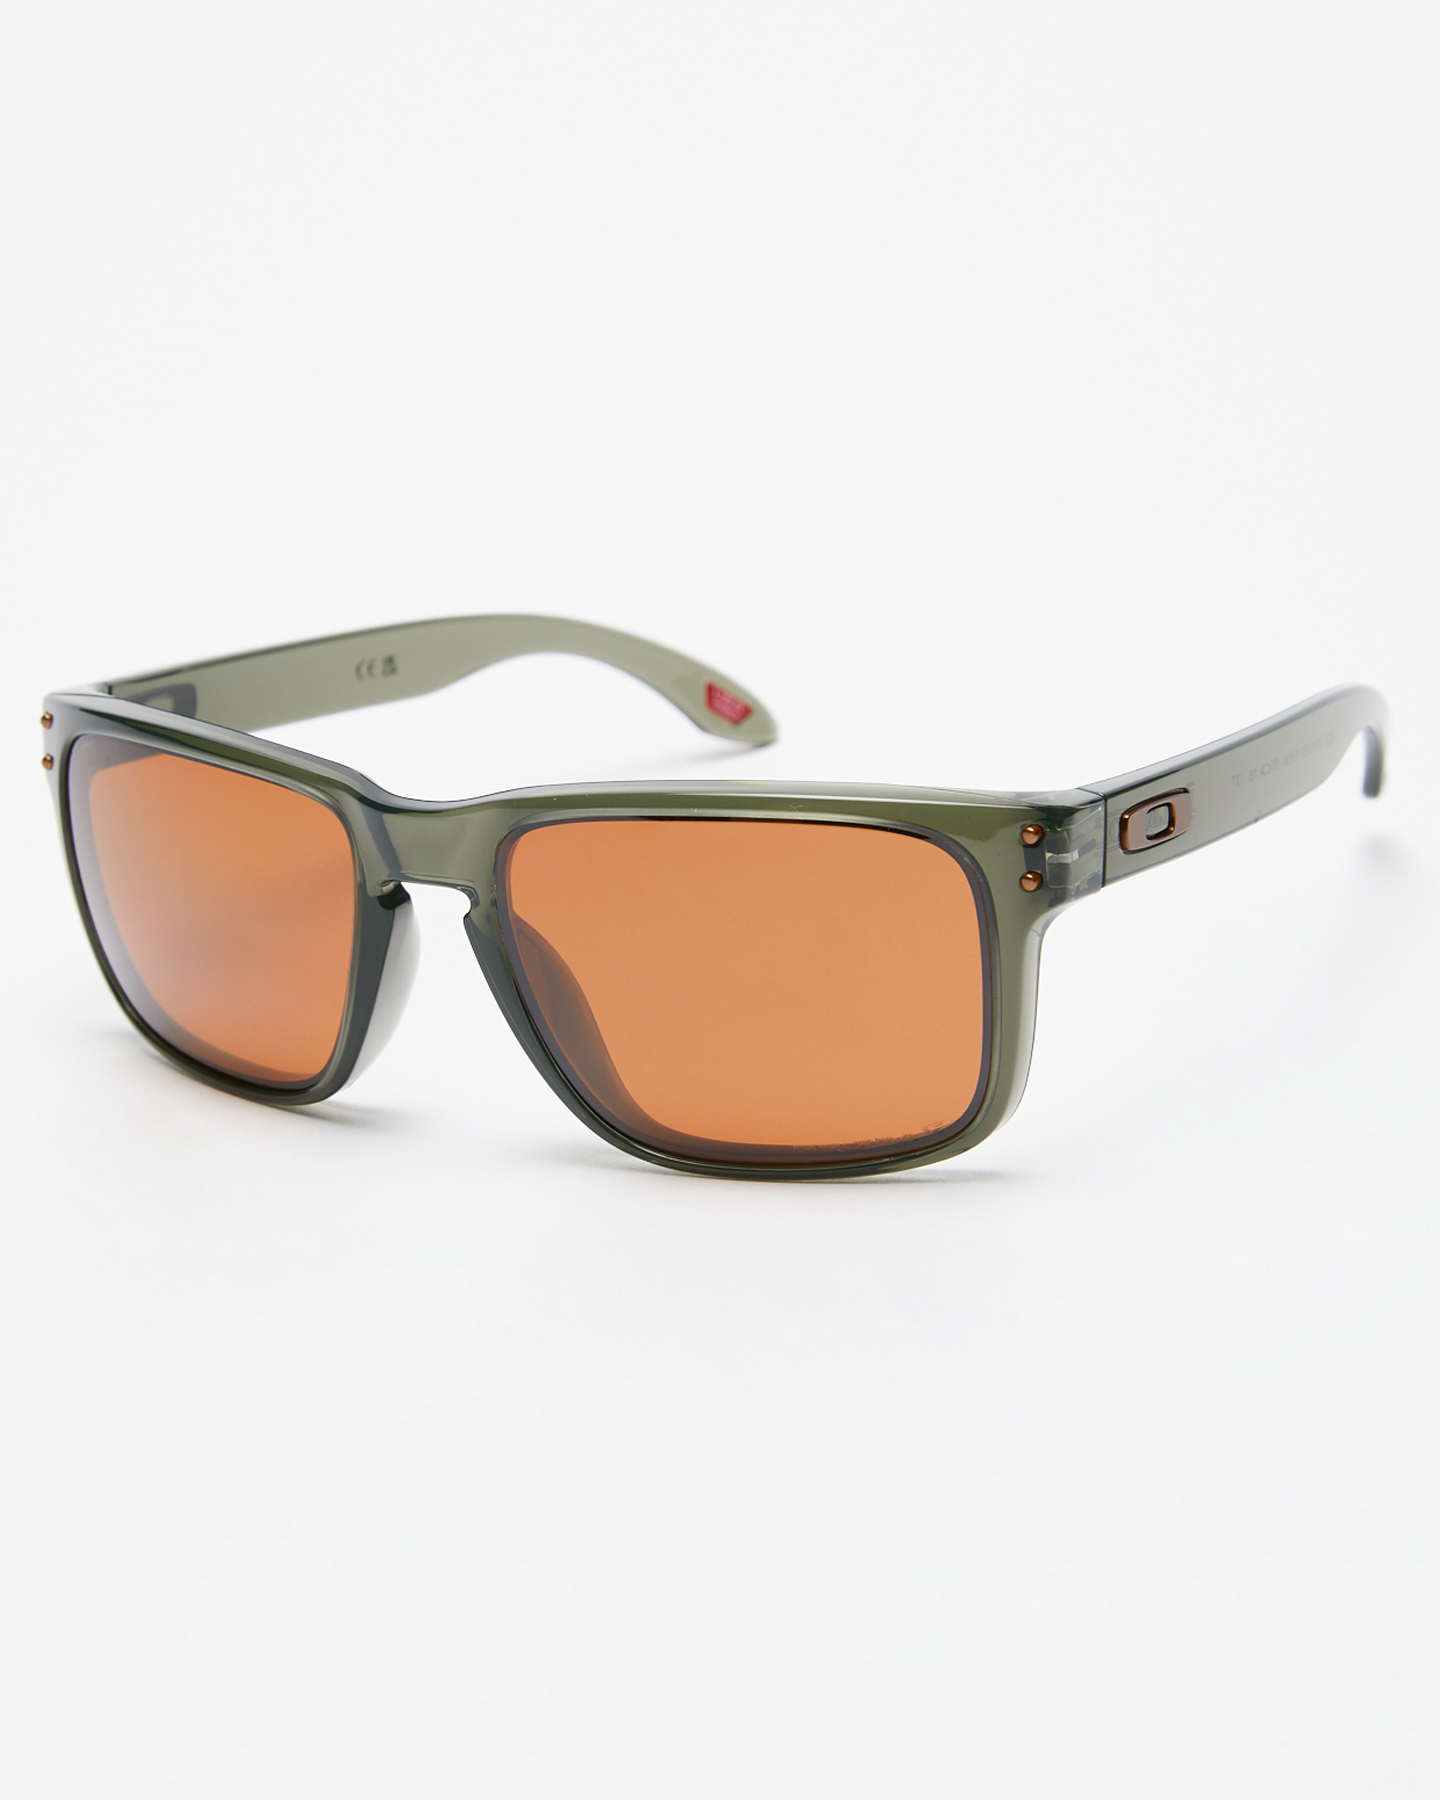 Oakley Holbrook Sunglasses - Olive Ink | SurfStitch